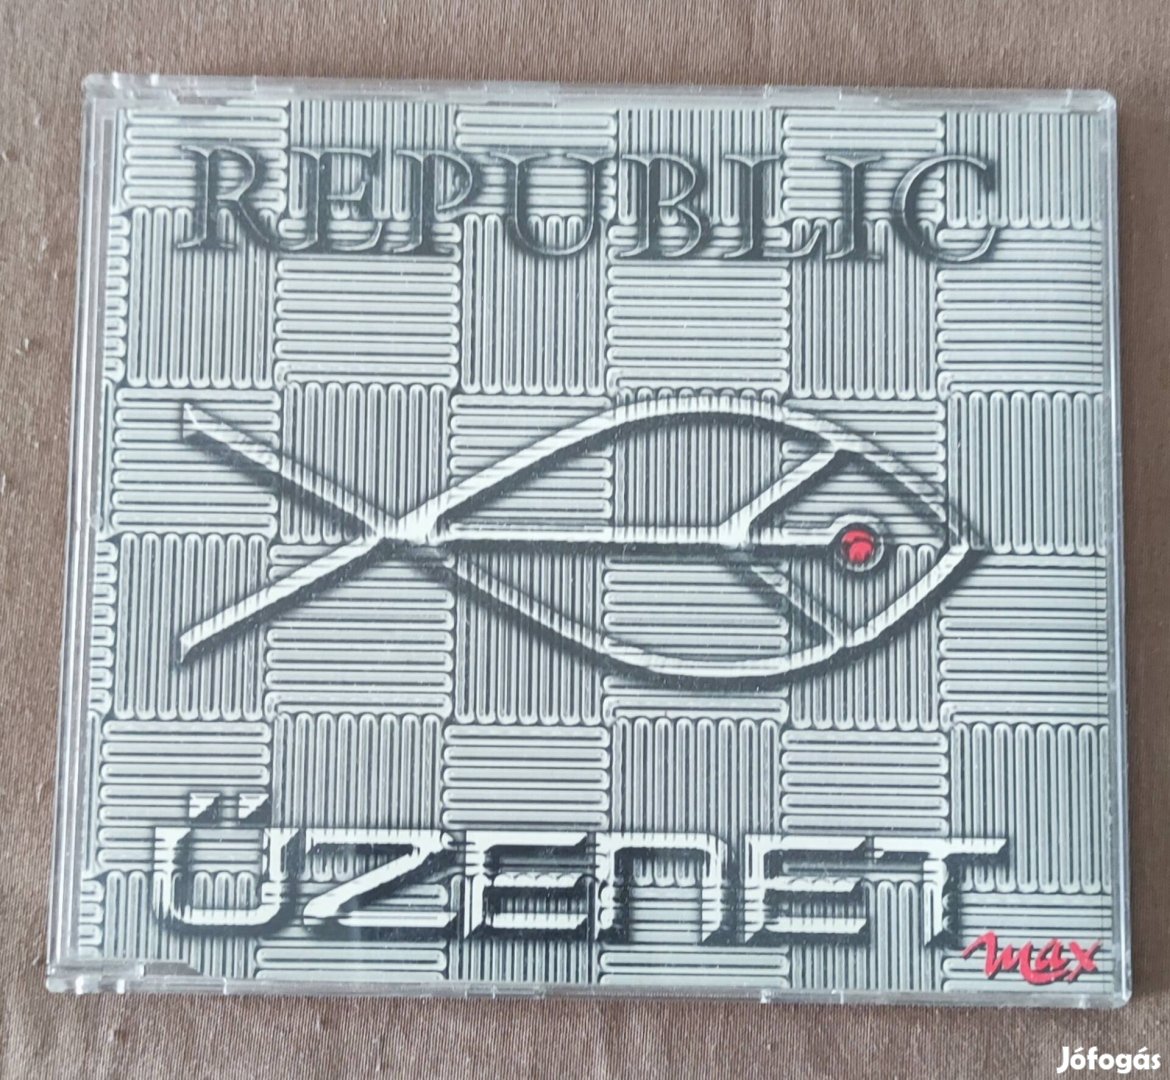 Republic - Üzenet maxi cd eladó 